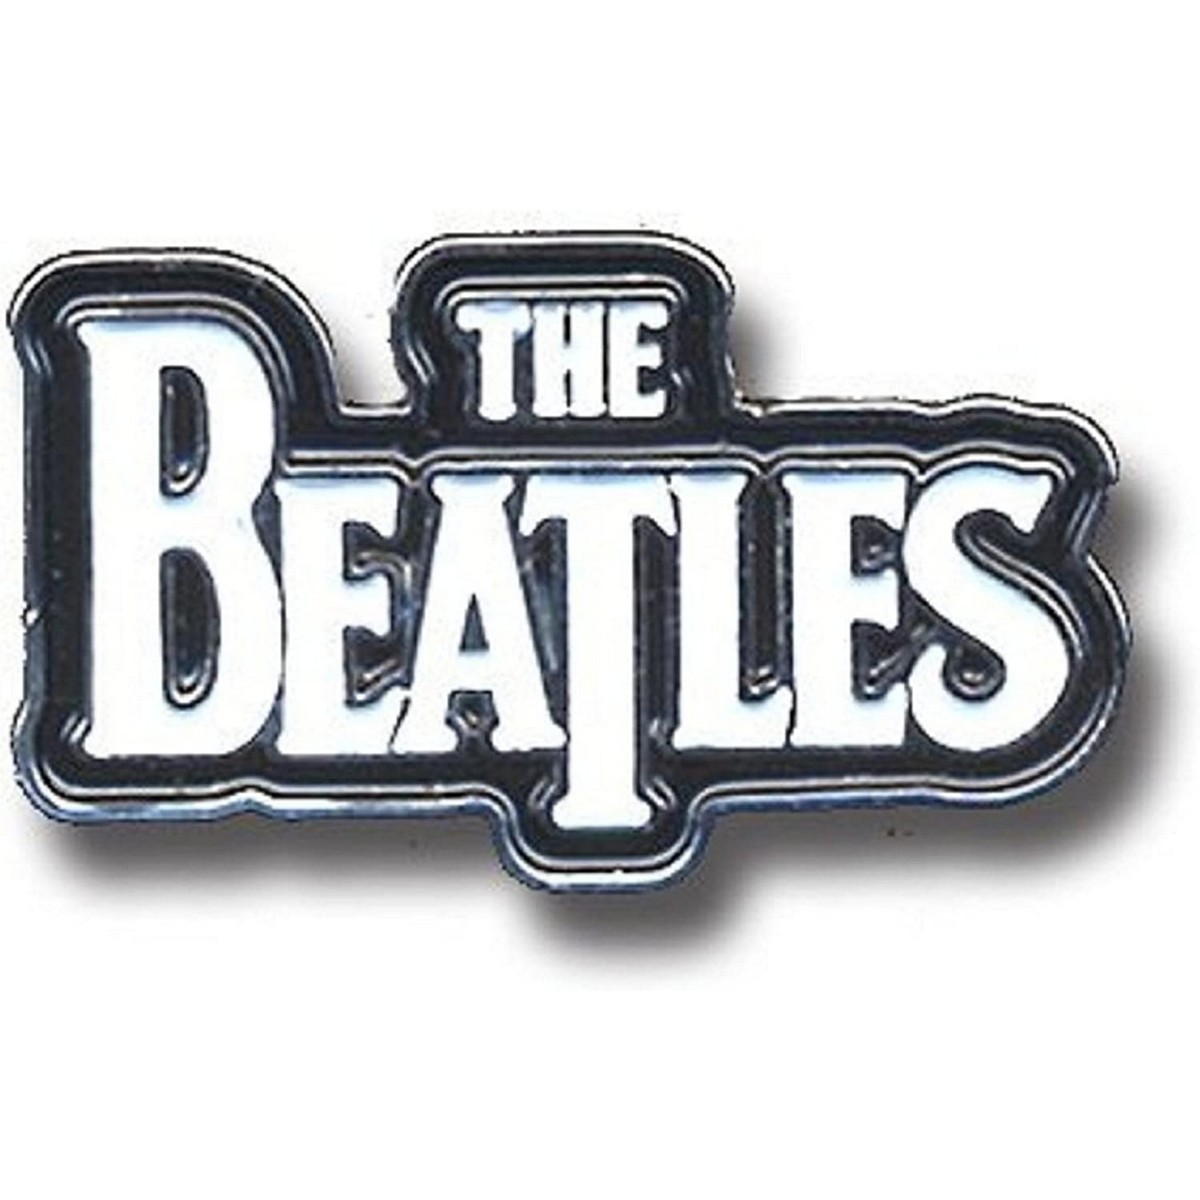 (ザ・ビートルズ) The Beatles オフィシャル商品 Drop T ロゴ バッジ 【海外通販】